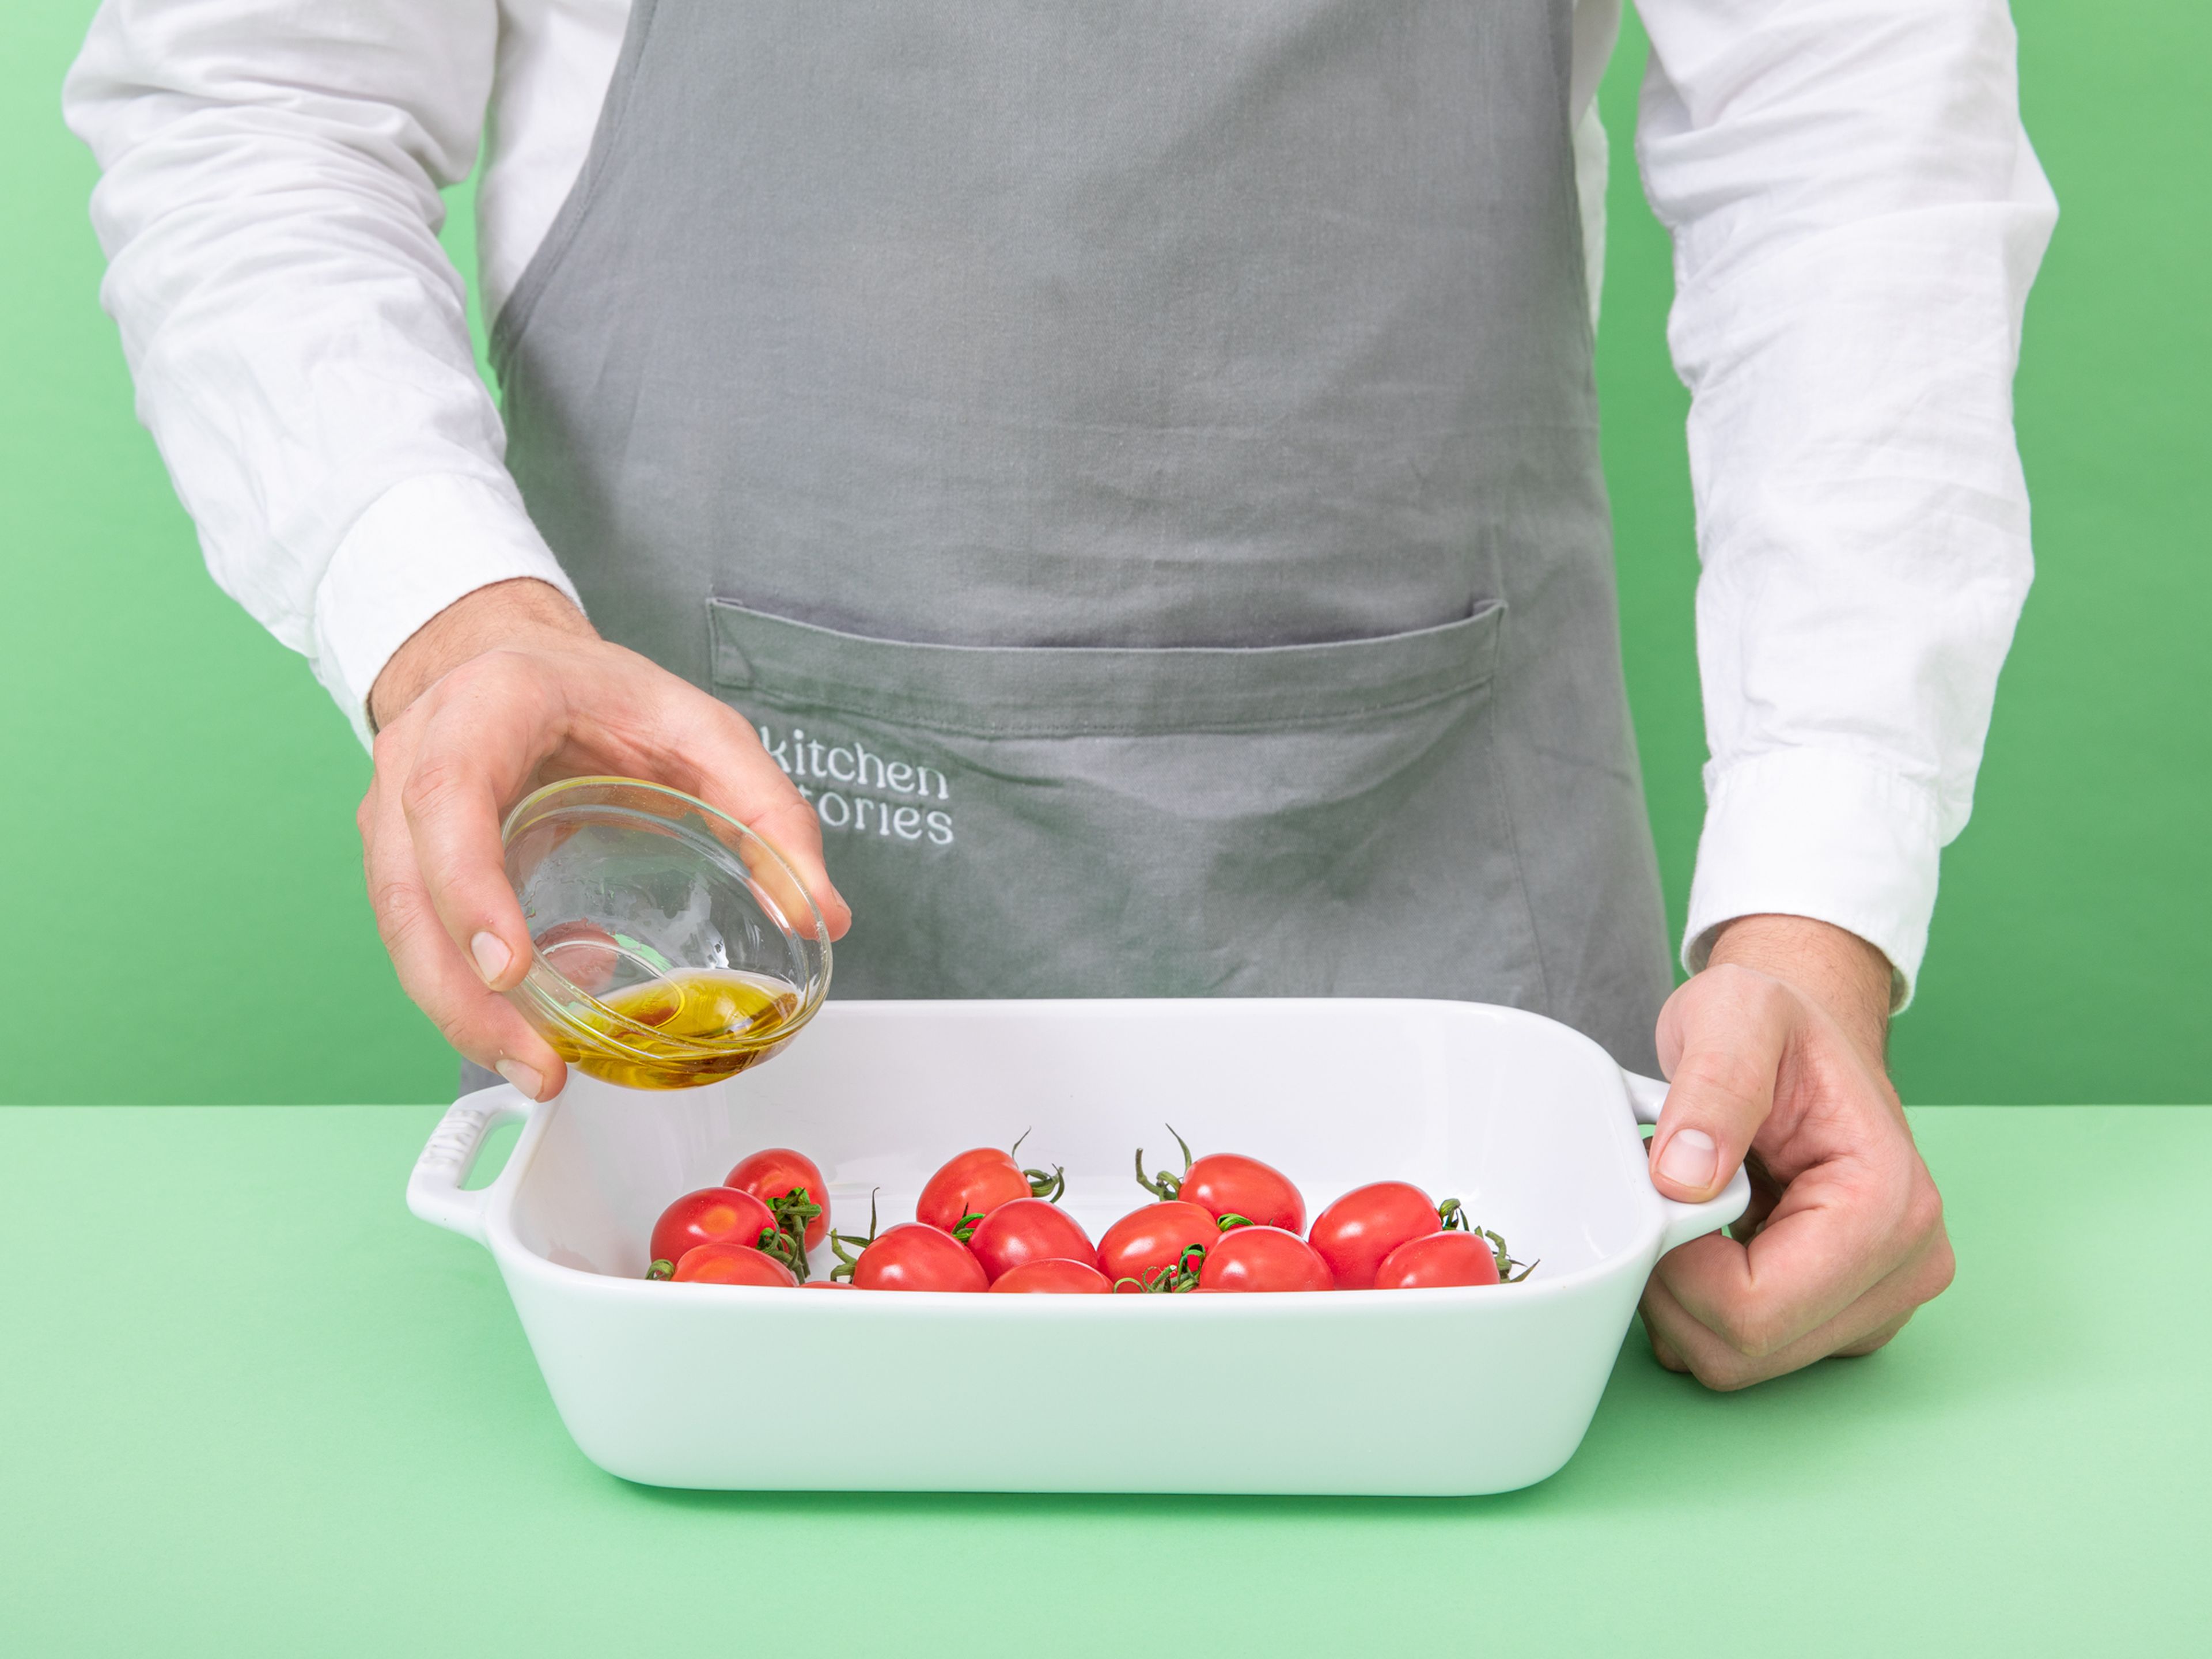 Um die gerösteten Tomaten vorzubereiten, die Kirschtomaten mit etwas Olivenöl, Salz und Pfeffer in einer Auflaufform mischen. In den Ofen schieben und für ca. 12 Min. backen. Eine Pfanne auf mittlerer Stufe erhitzen. Pinienkerne in die trockene Pfanne geben und unter Rühren rösten. Beiseite stellen.